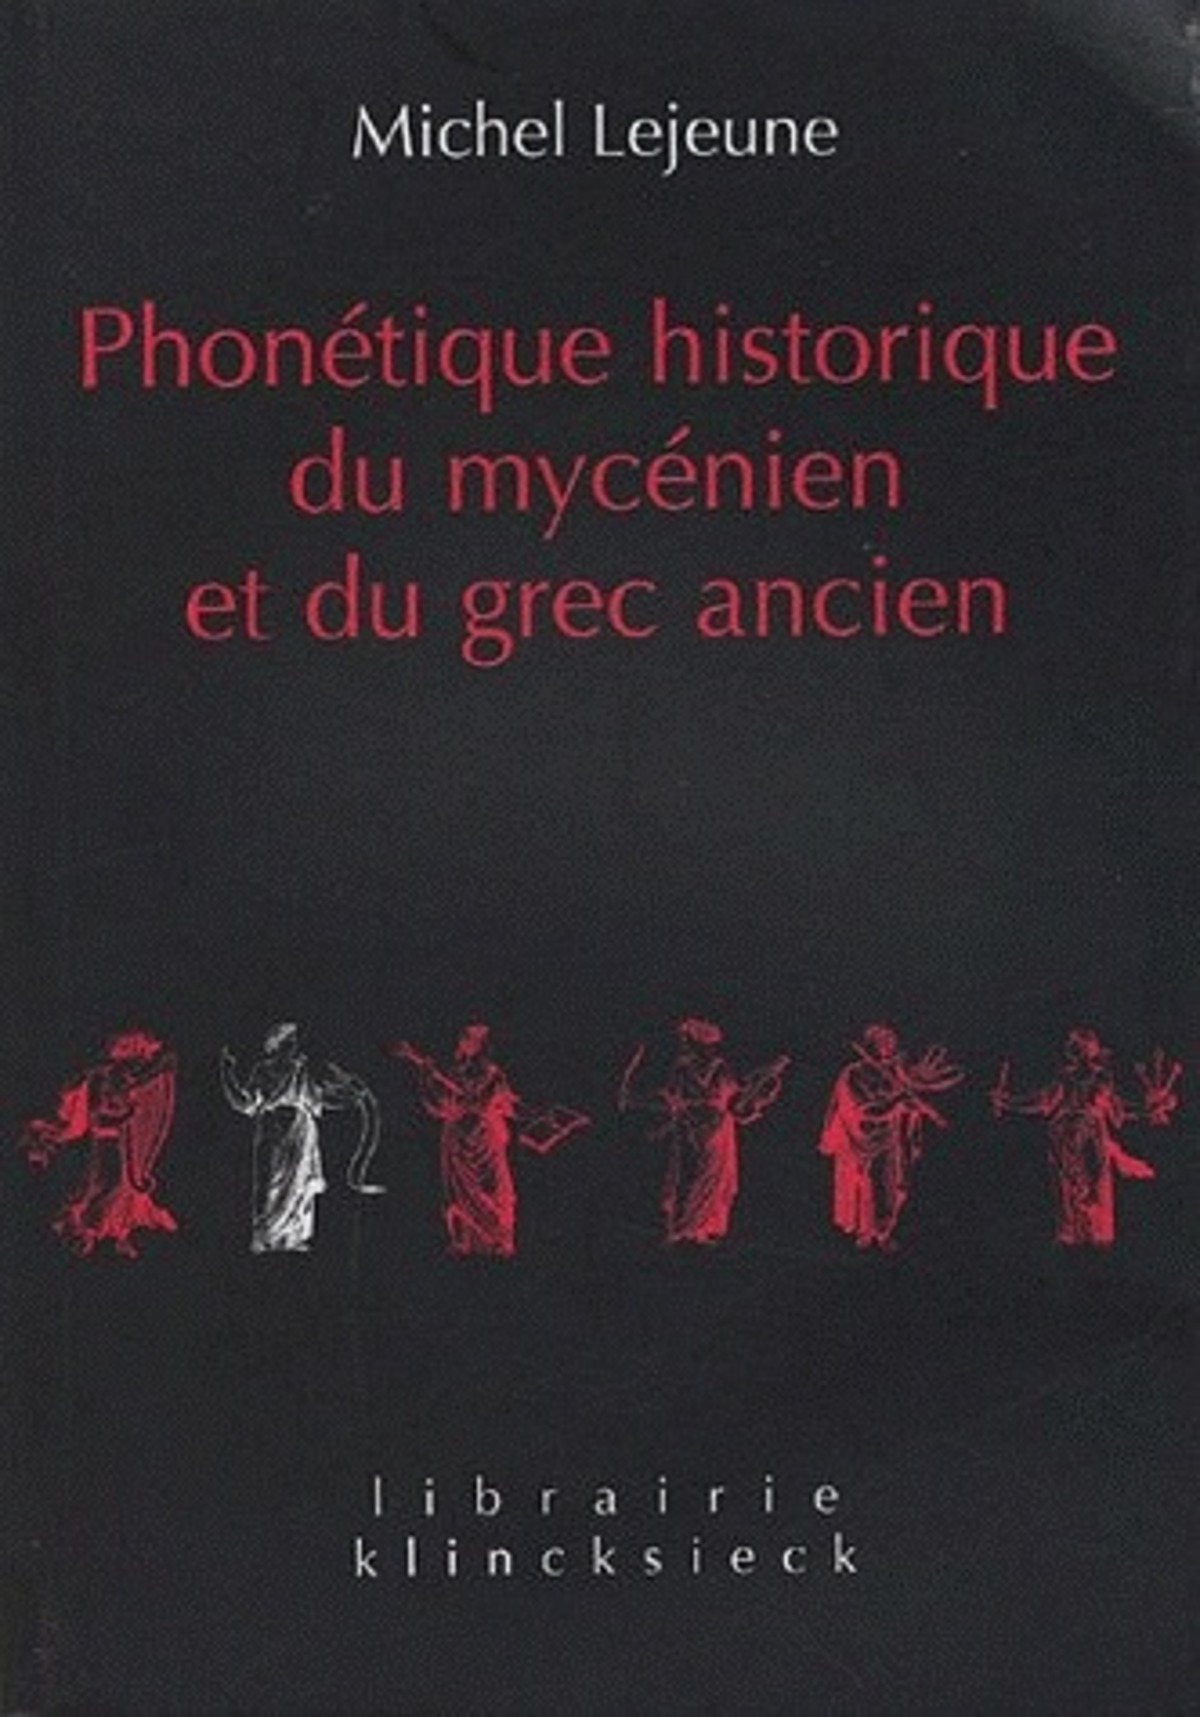 Phonétique historique du mycénien et du grec ancien